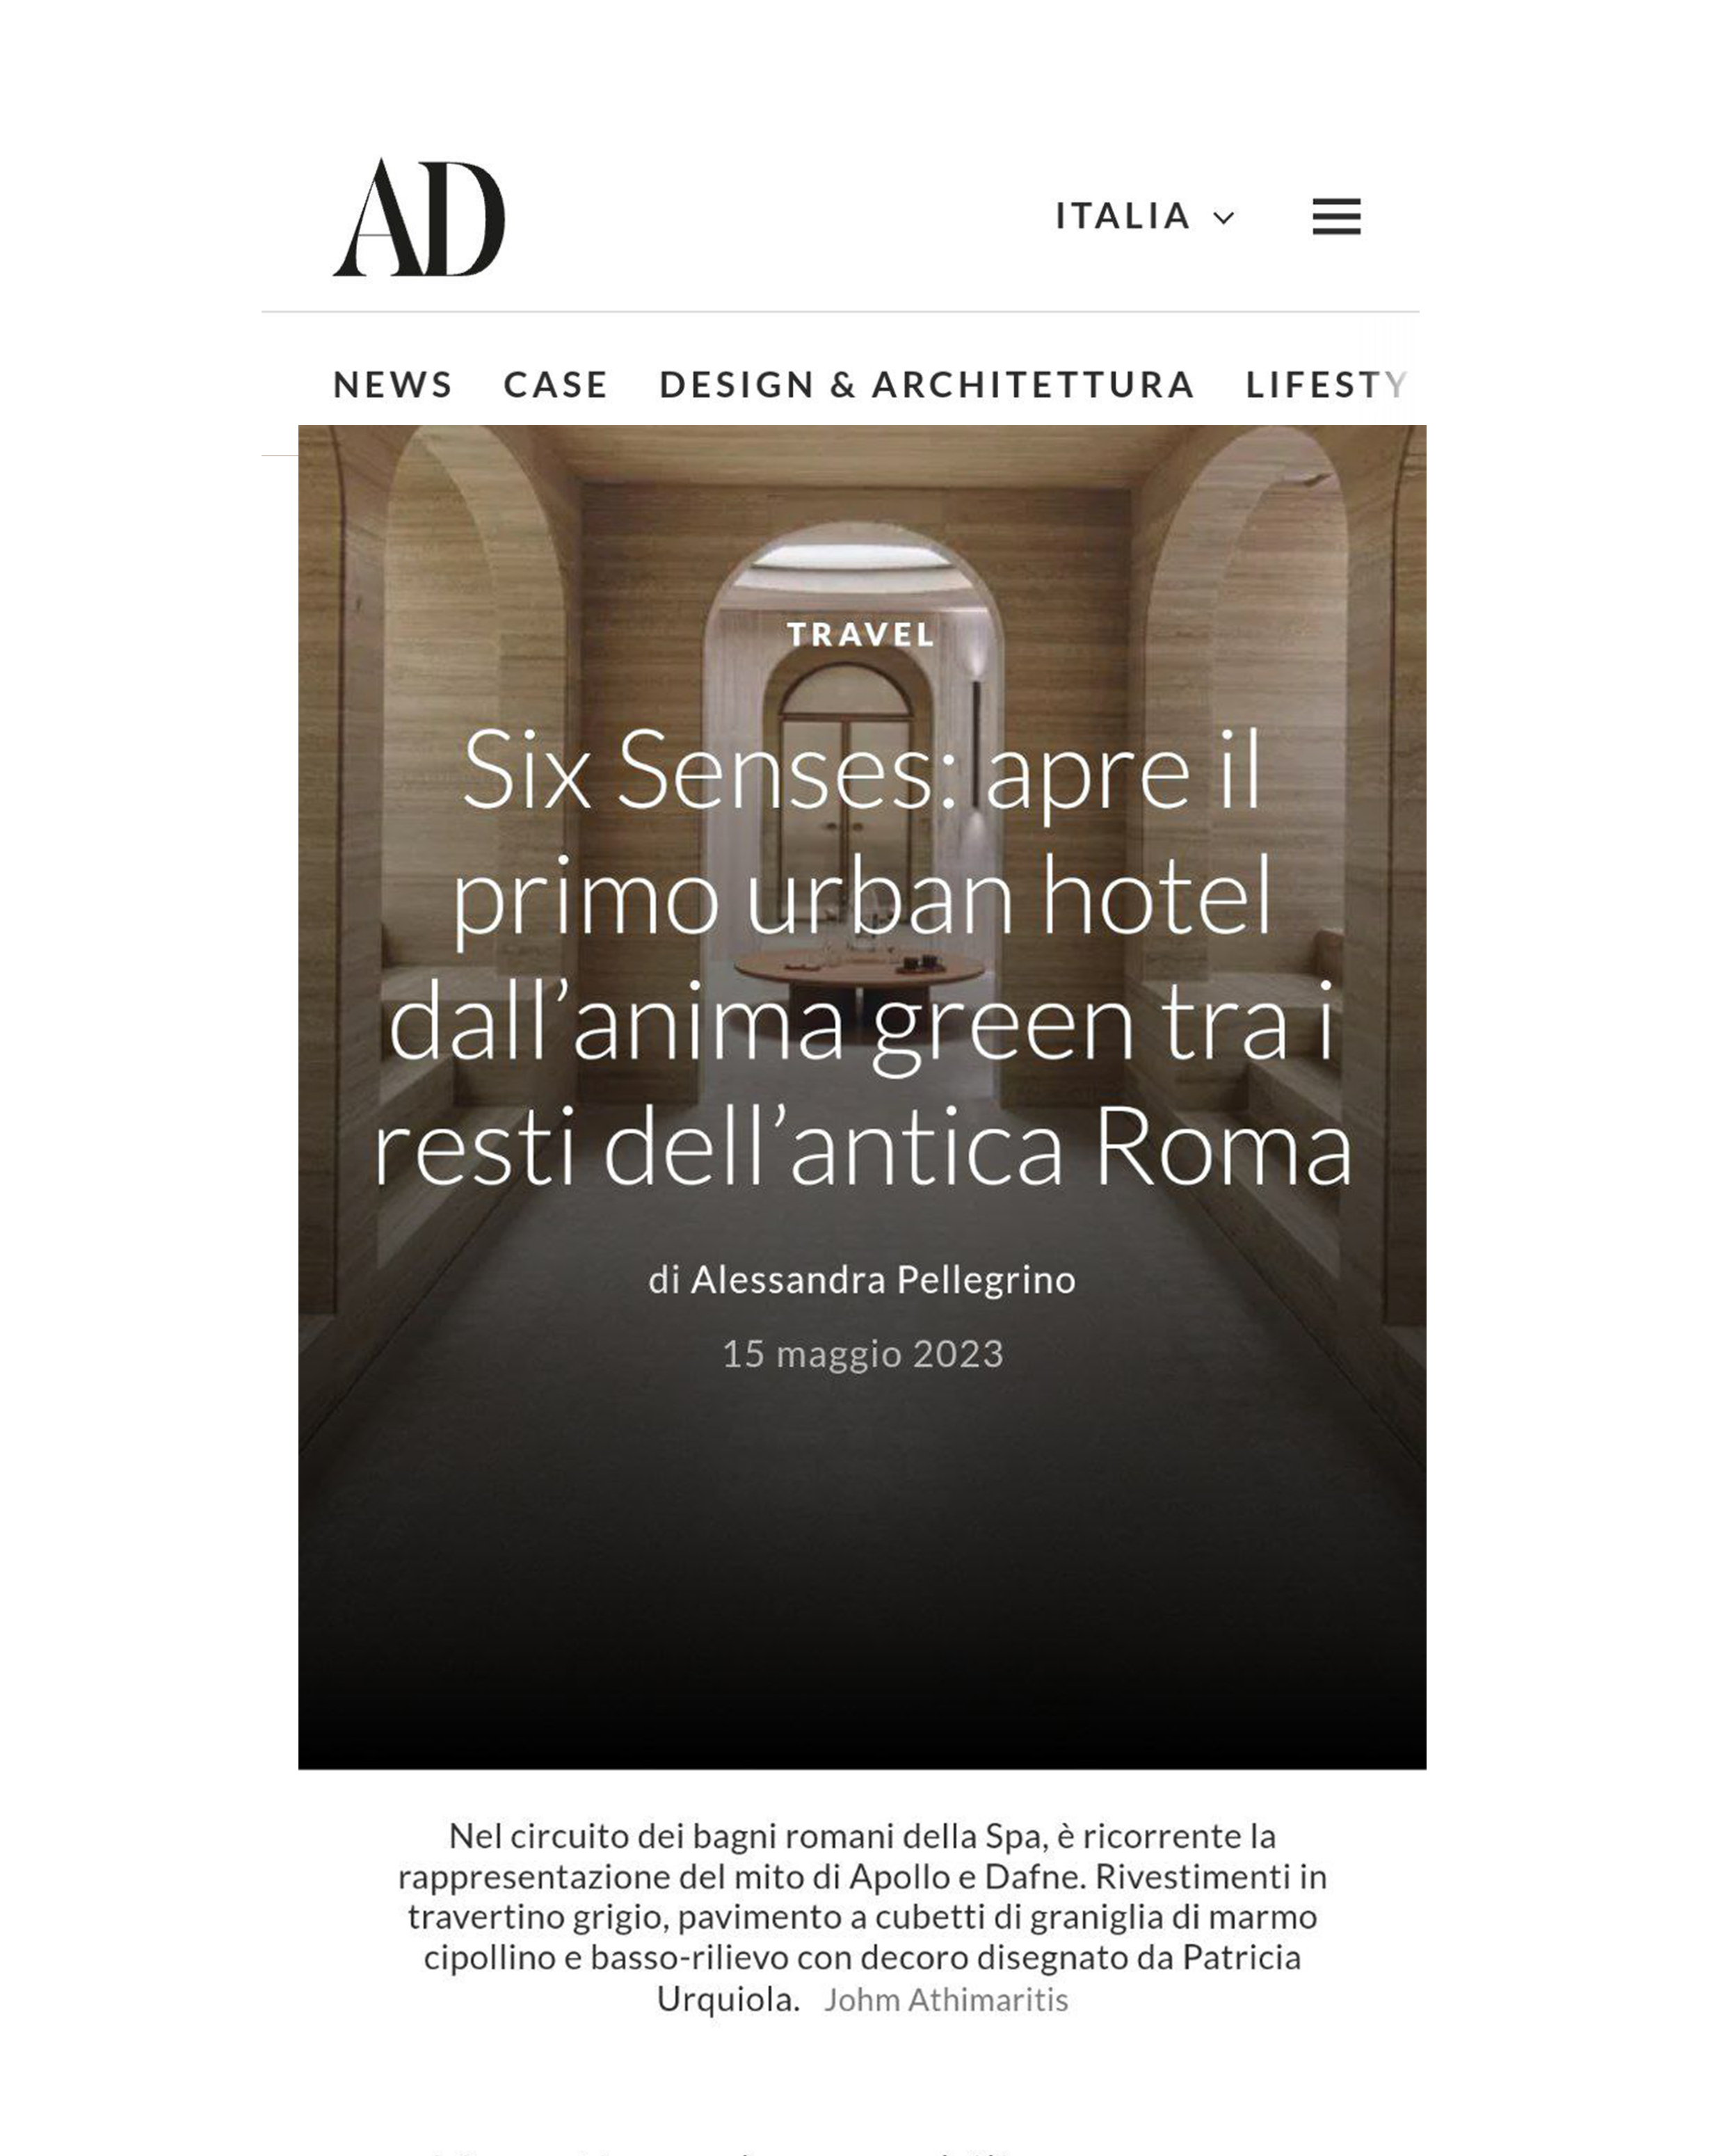 Six sense rome AD - degli - communication agency Milan